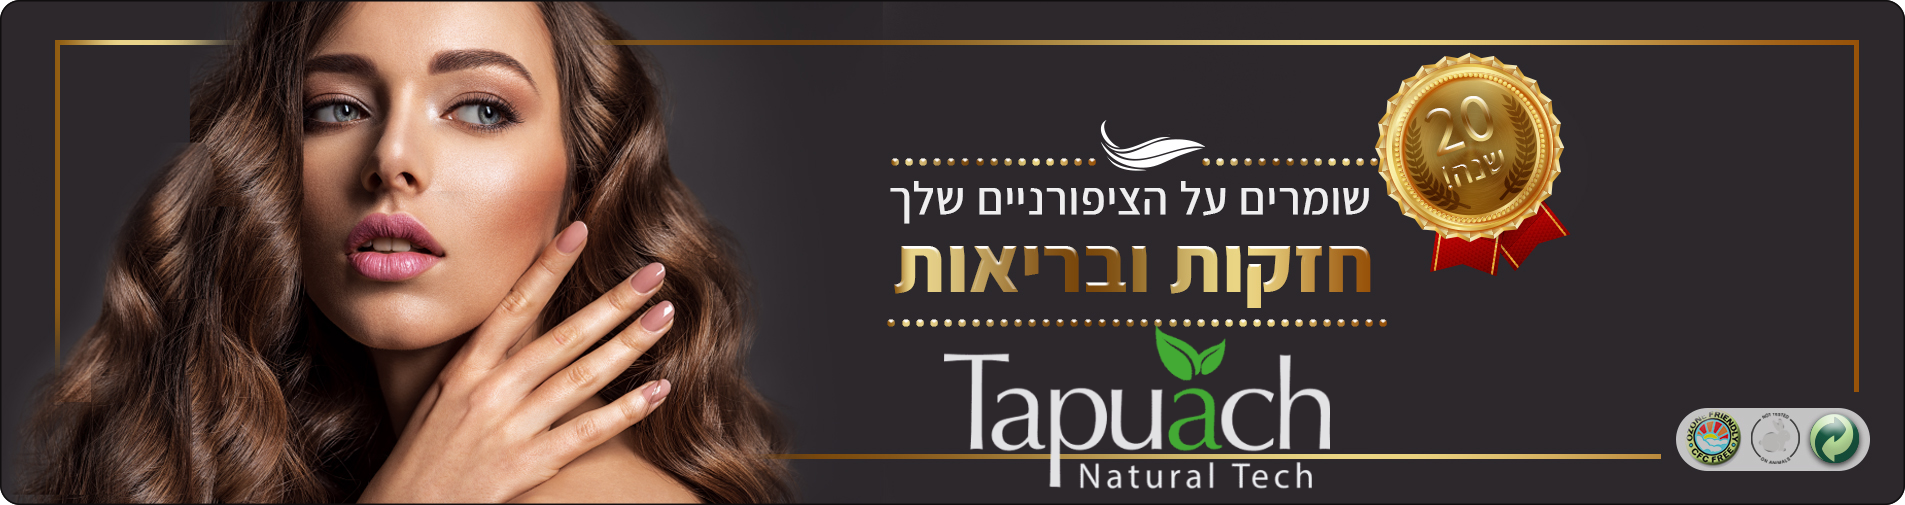 תפוח טכנולוגיות טבעיות - Tapuach Natural Tech<br>טיפוח הציפורניים